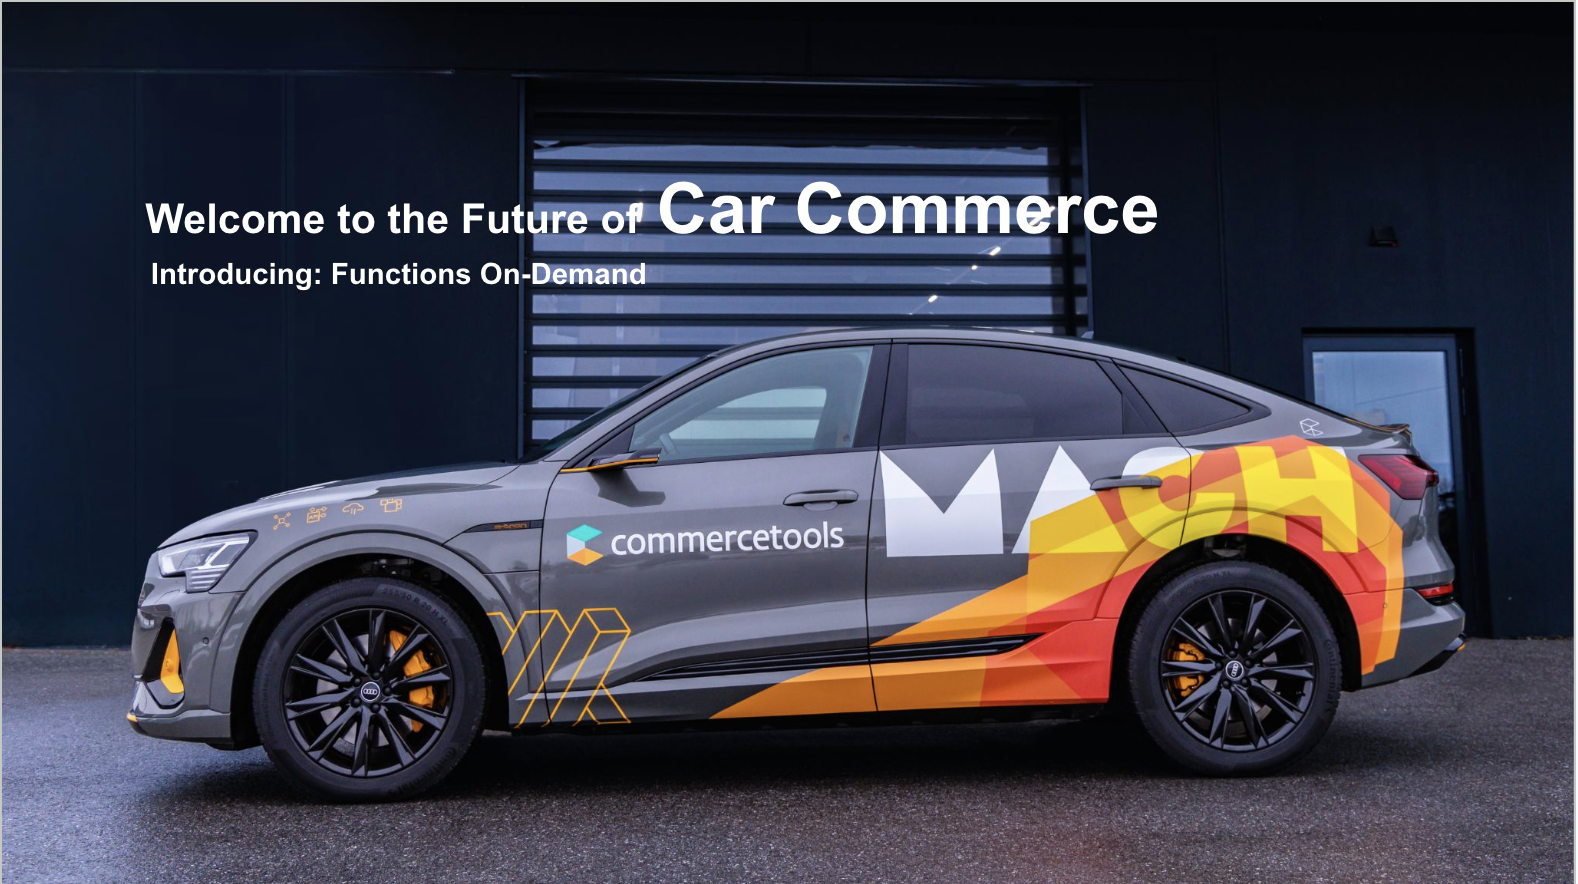 Car commerce